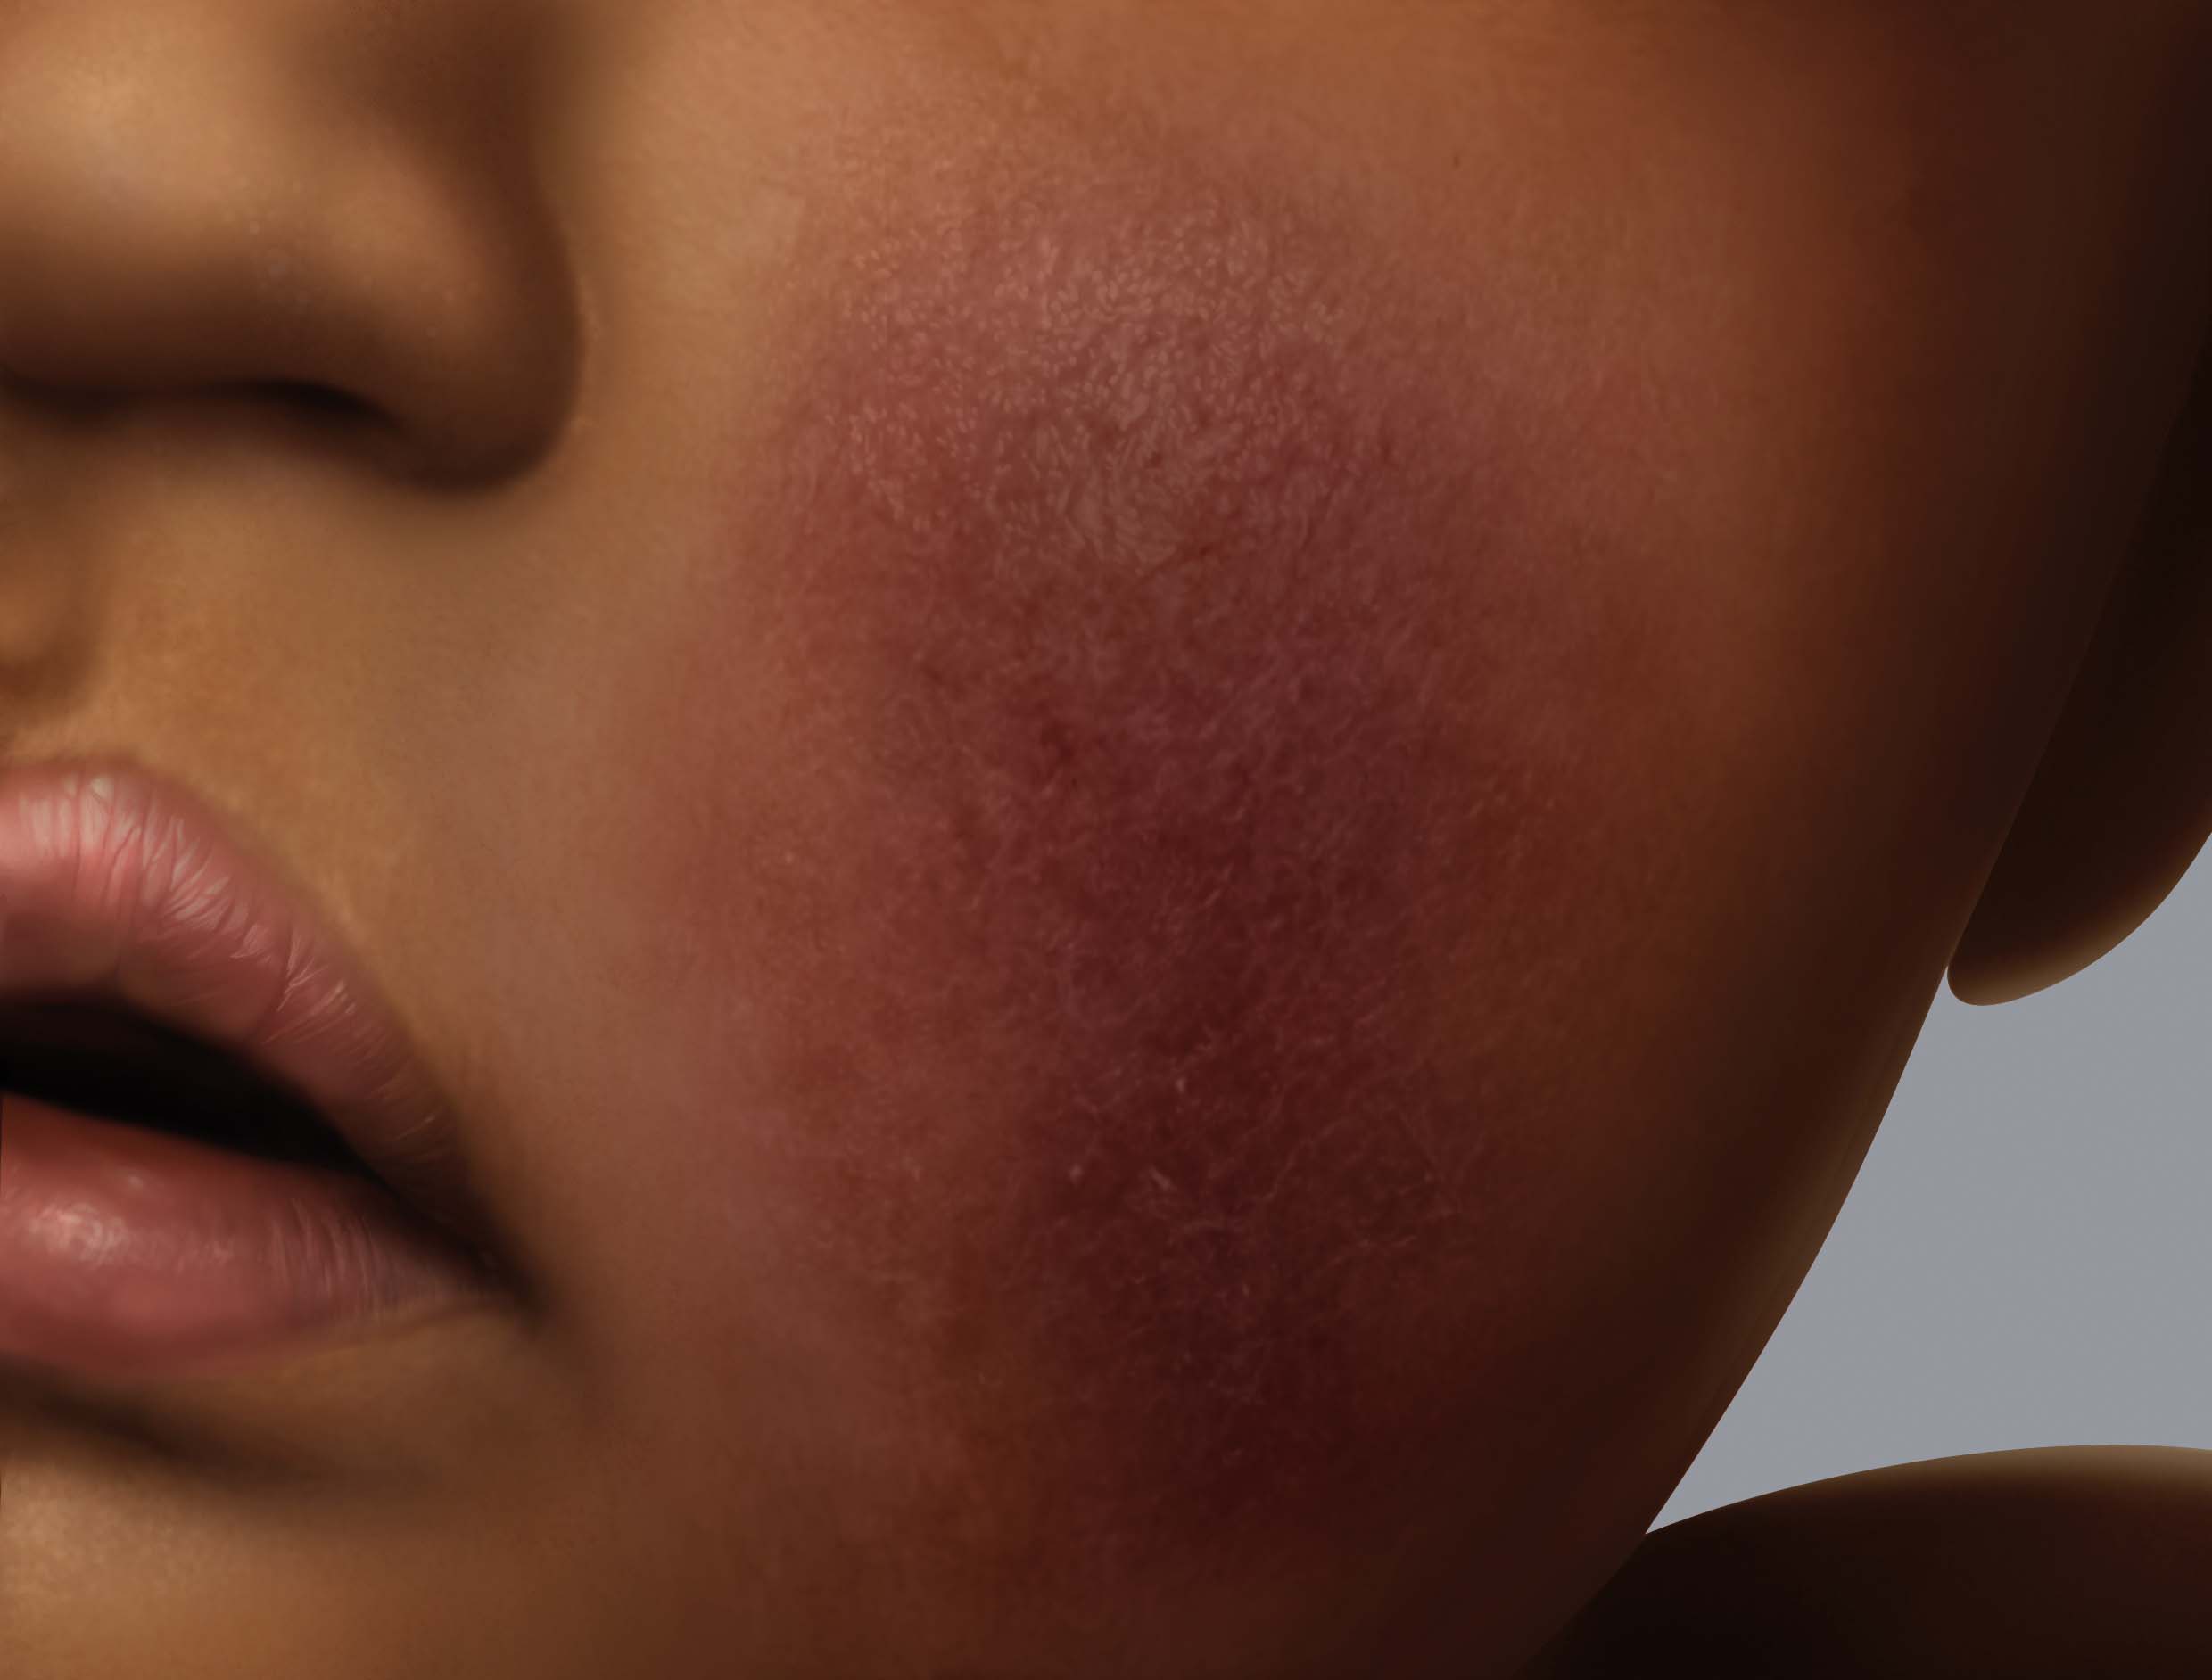 Symptoms of eczema on darker skin: erythema